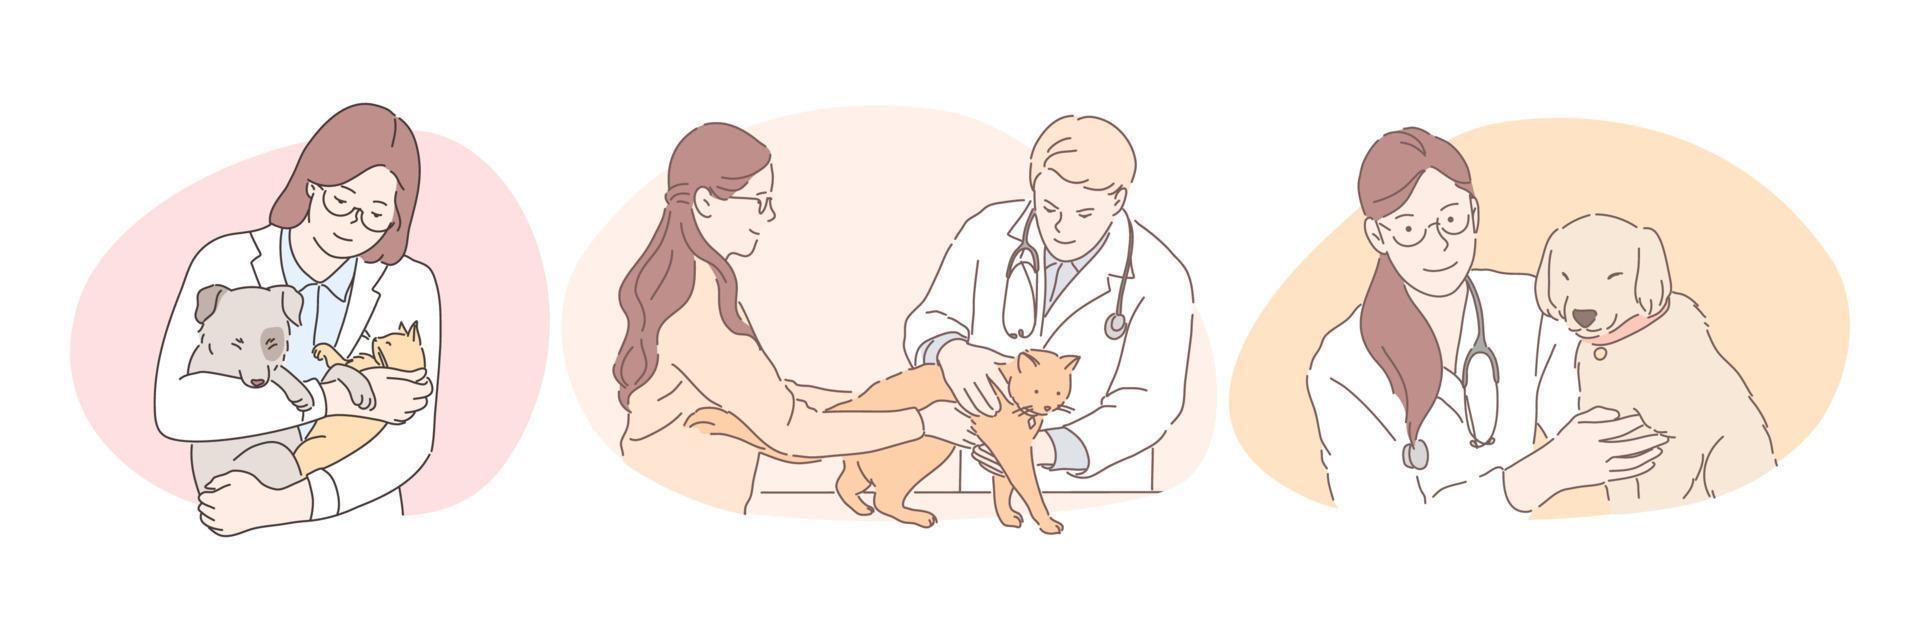 veterinario profesional con mascotas durante el concepto de trabajo. jóvenes hombres y mujeres seguros médicos veterinarios en uniforme blanco que examinan y curan perros y gatos en oficinas de clínicas médicas vector